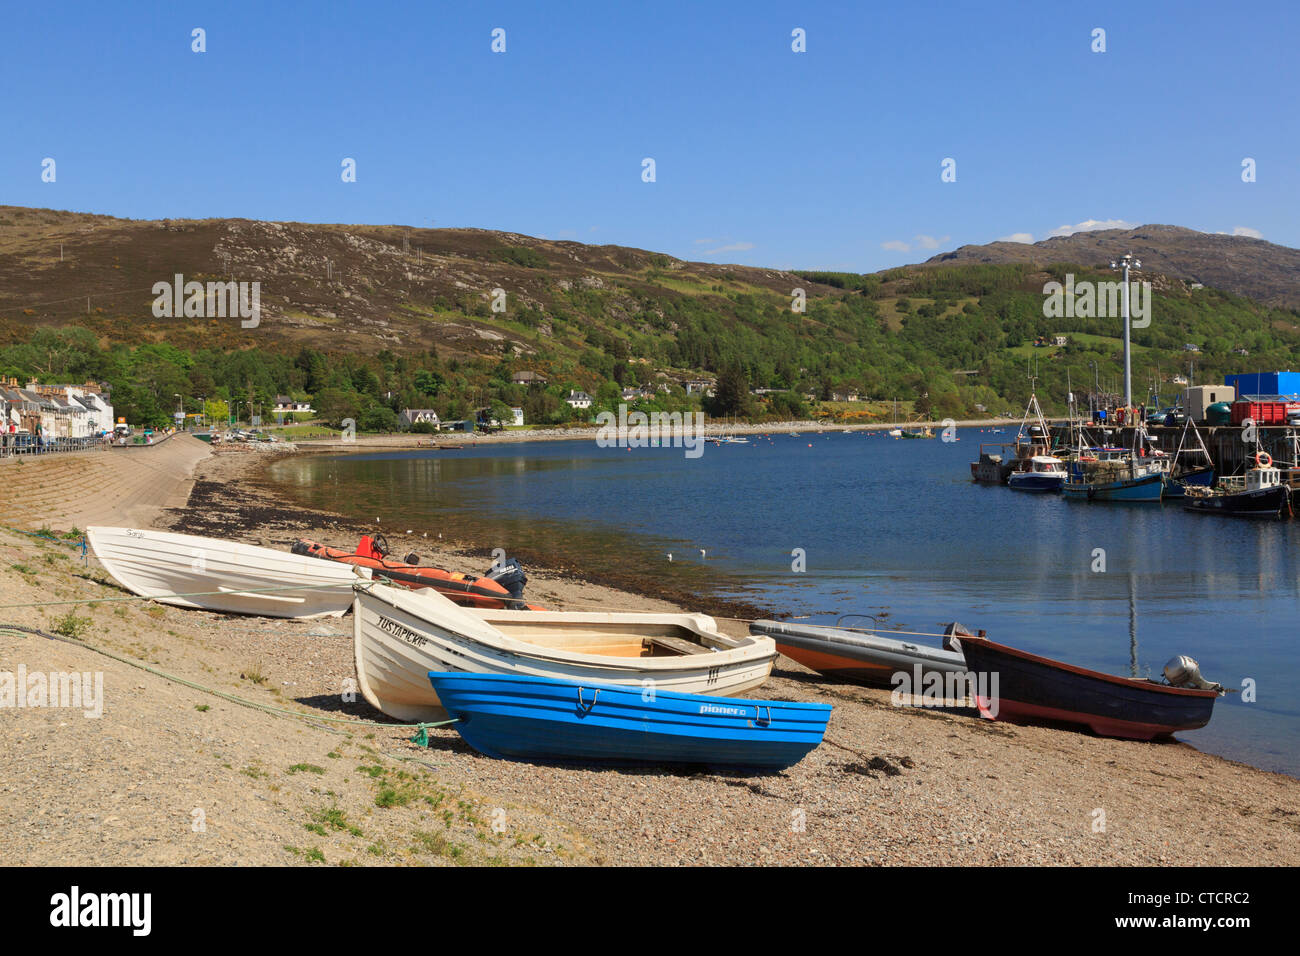 Boote am Strand von Loch Broom Fischerhafen am nordwestlichen Highlands Küste gestrandet. Ullapool Wester Ross Highland, Schottland, Vereinigtes Königreich Stockfoto